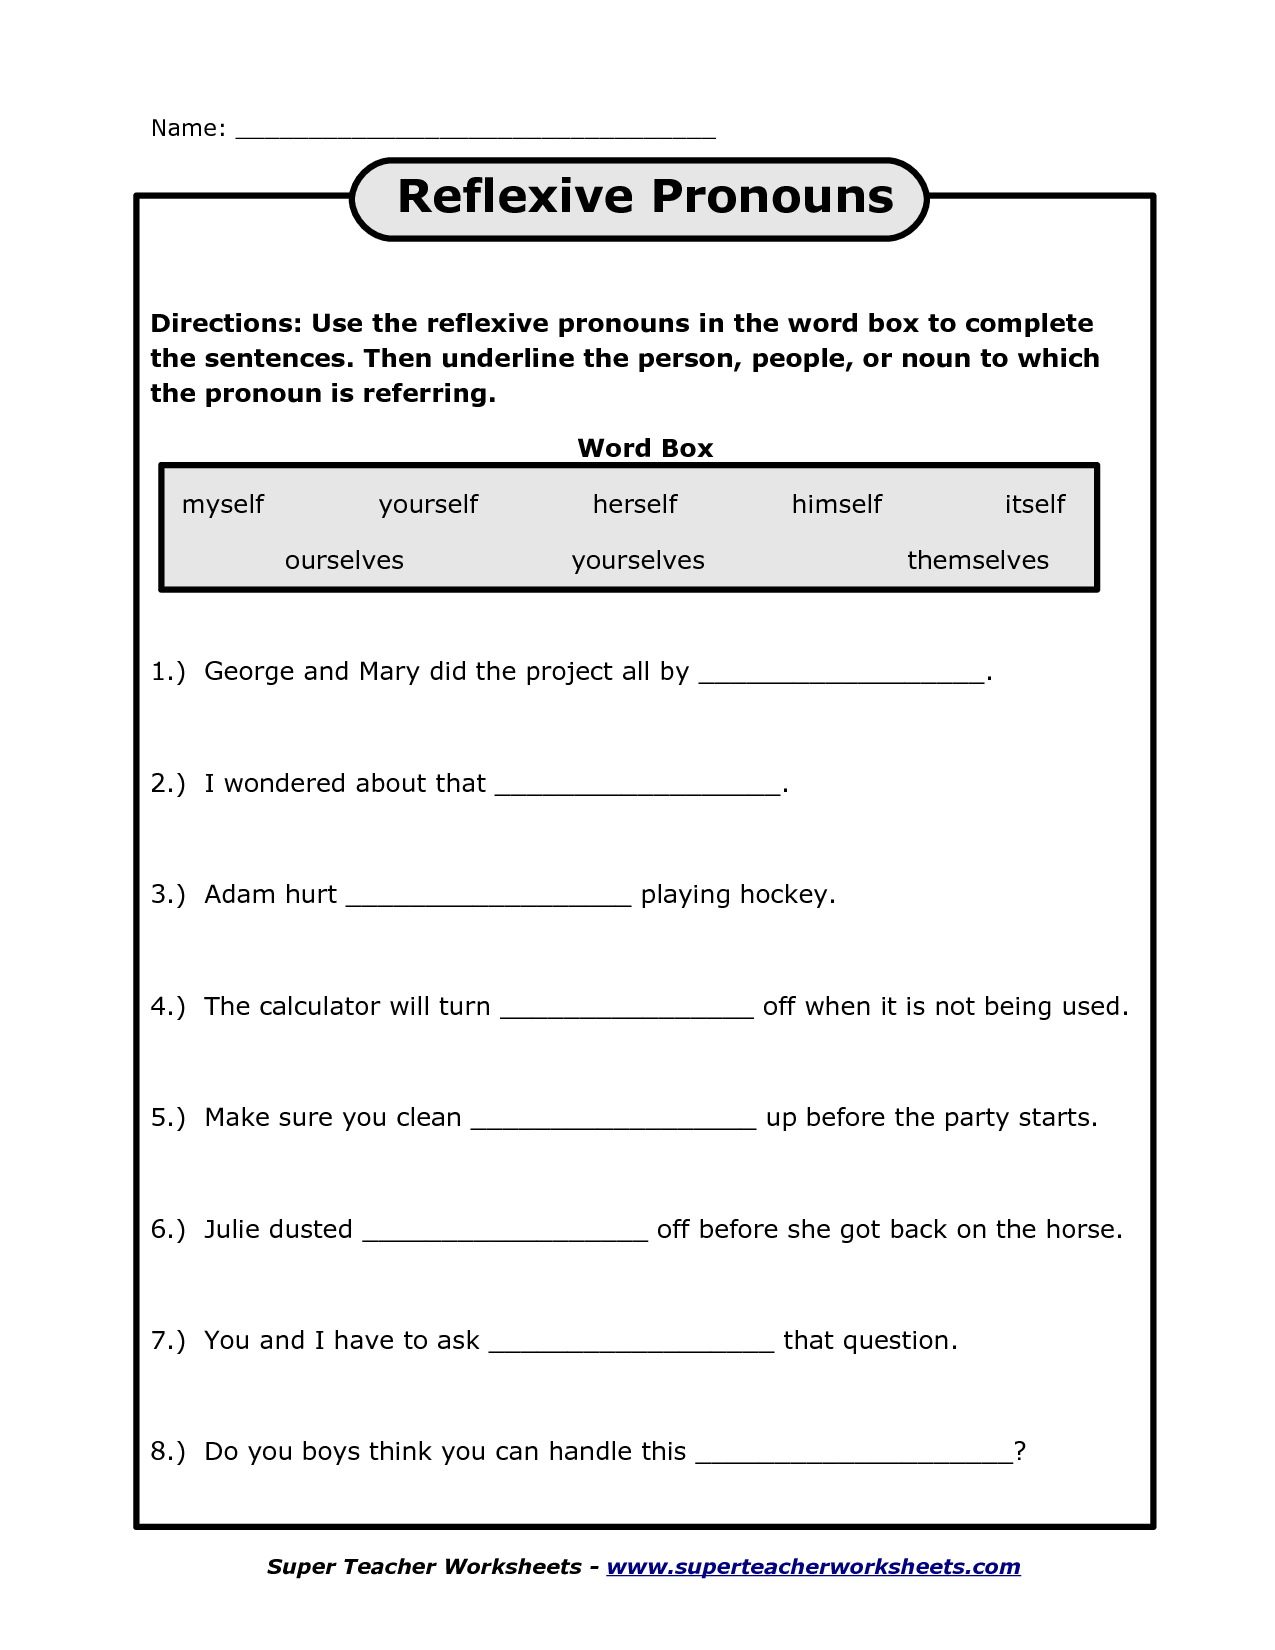 20-pronoun-worksheet-for-2nd-grade-desalas-template